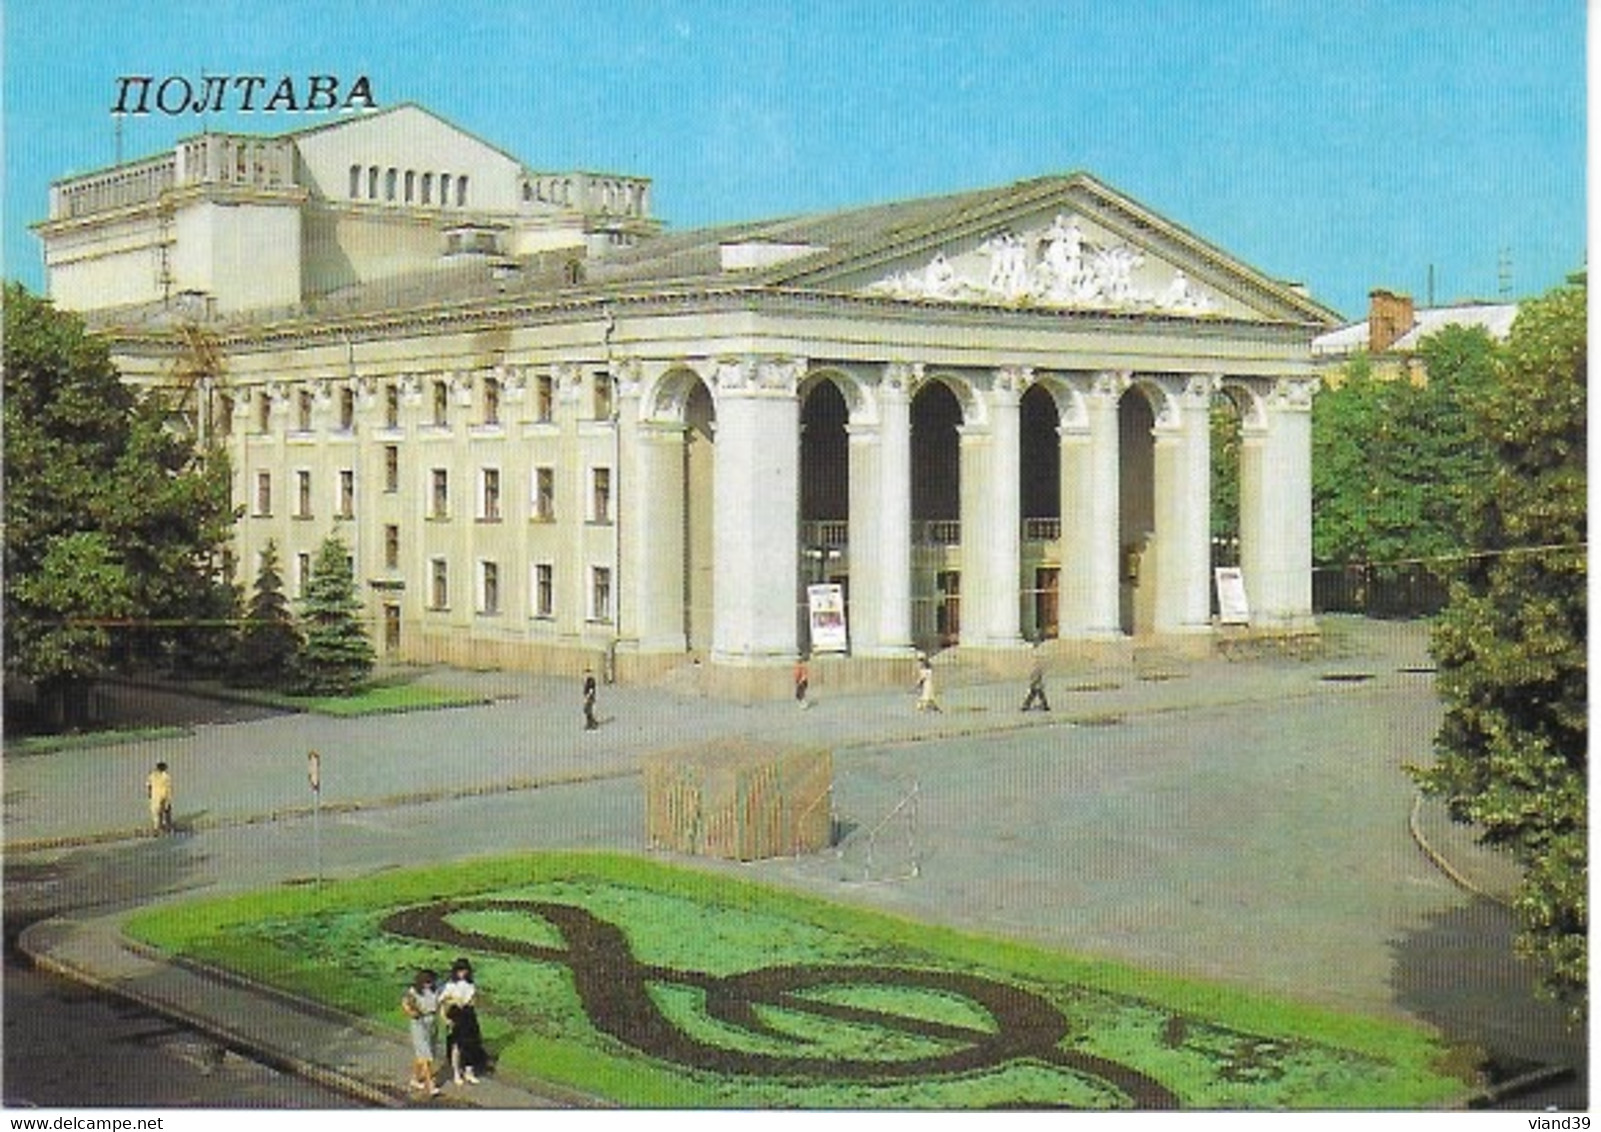 Poltava - 18 vues 10 x 15 cm - 1988       voir scanne. (1)